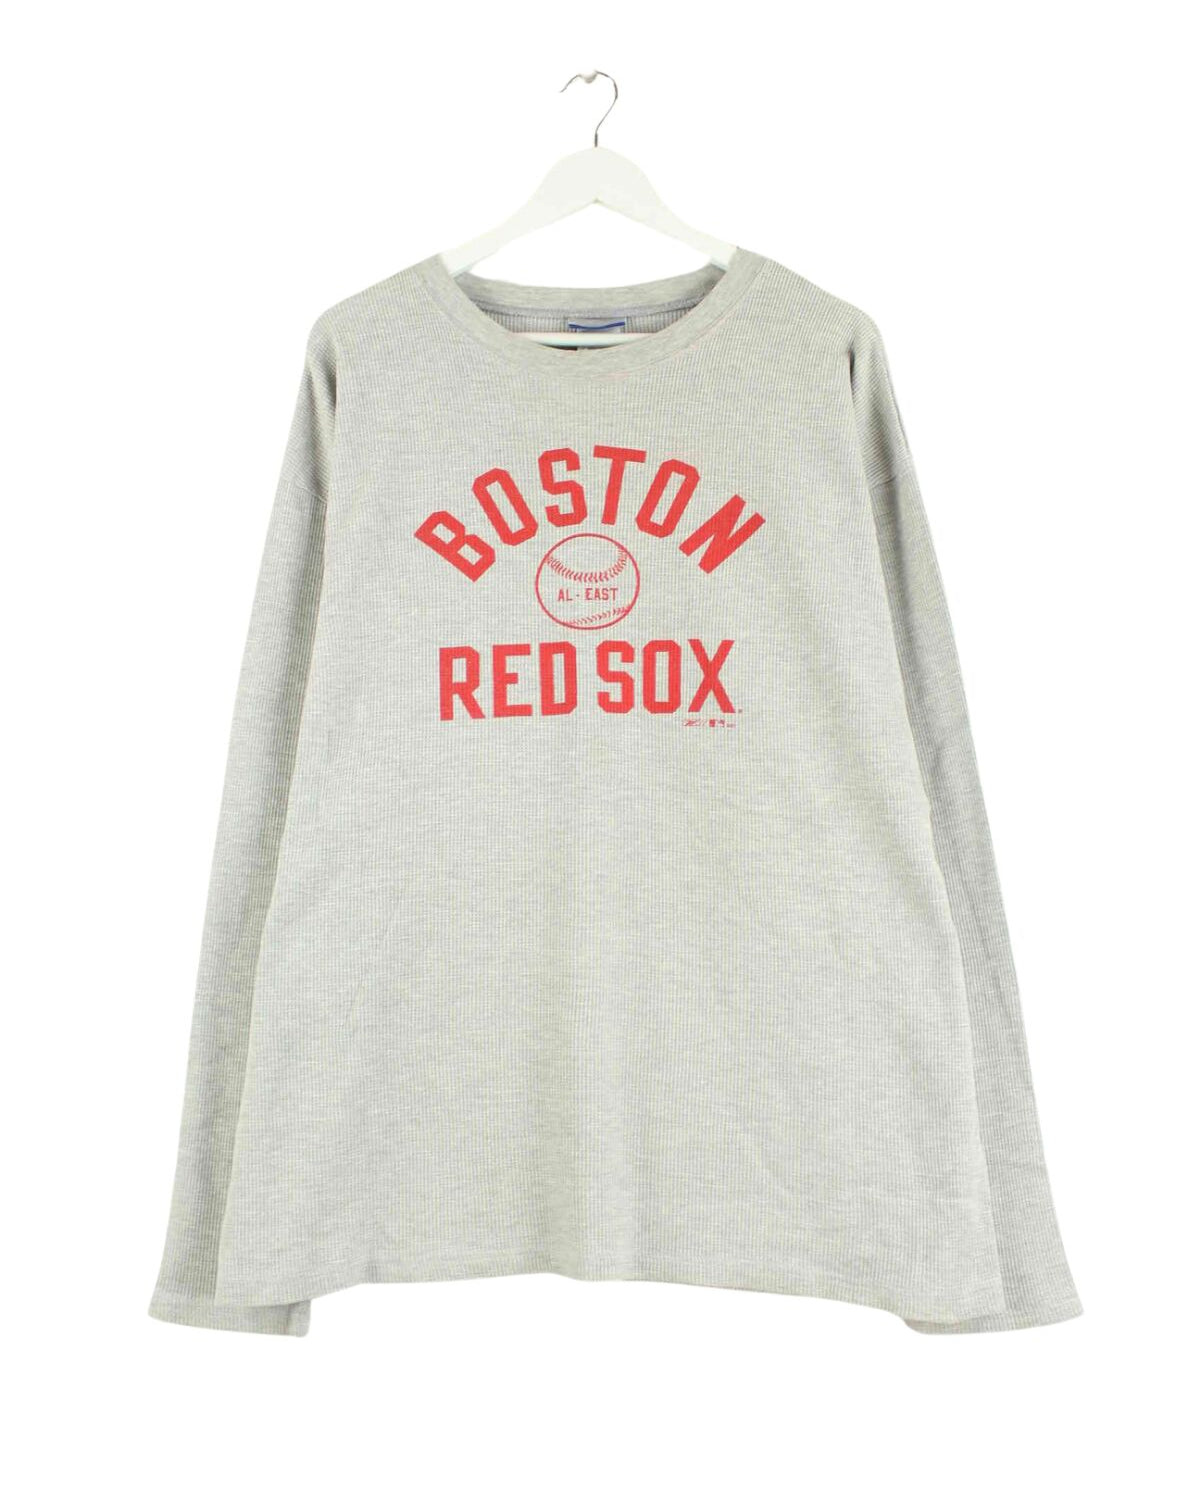 Reebok 00s Boston Redsox Print Sweater Grau XXL (front image)